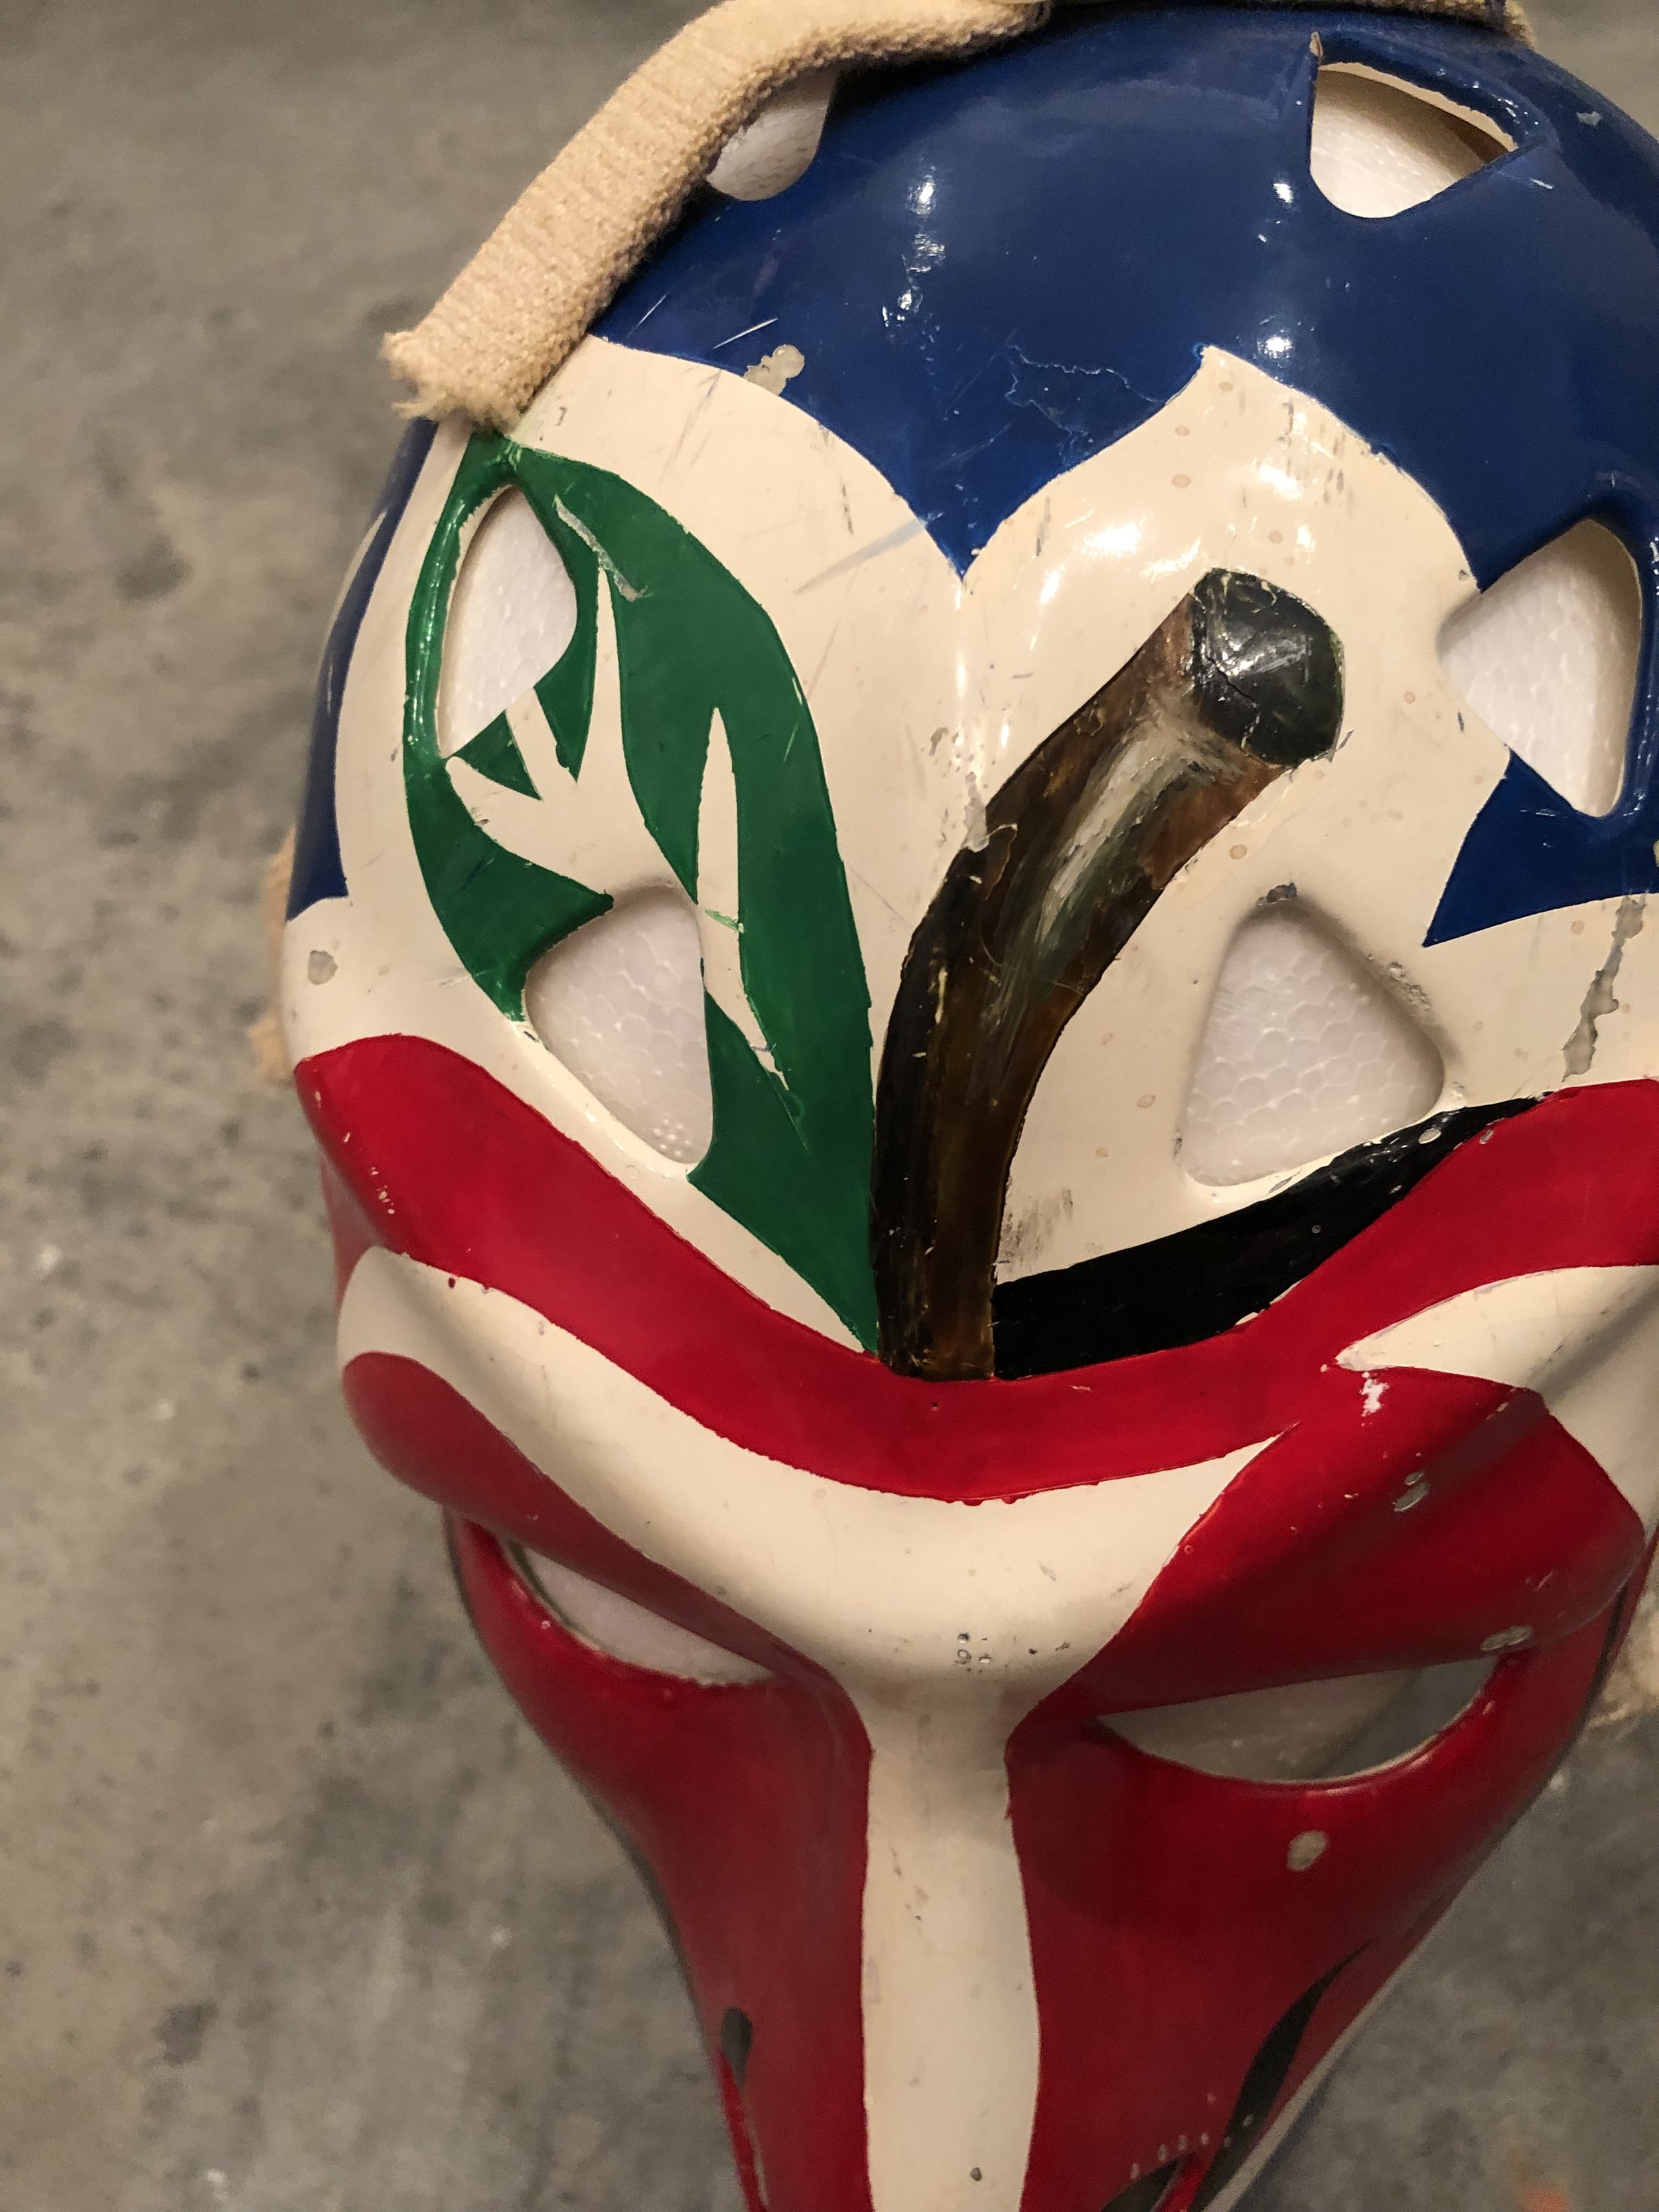 Wayne Thomas Mask Full Size Ice Hockey Mask Goalie Helmet 1:1 